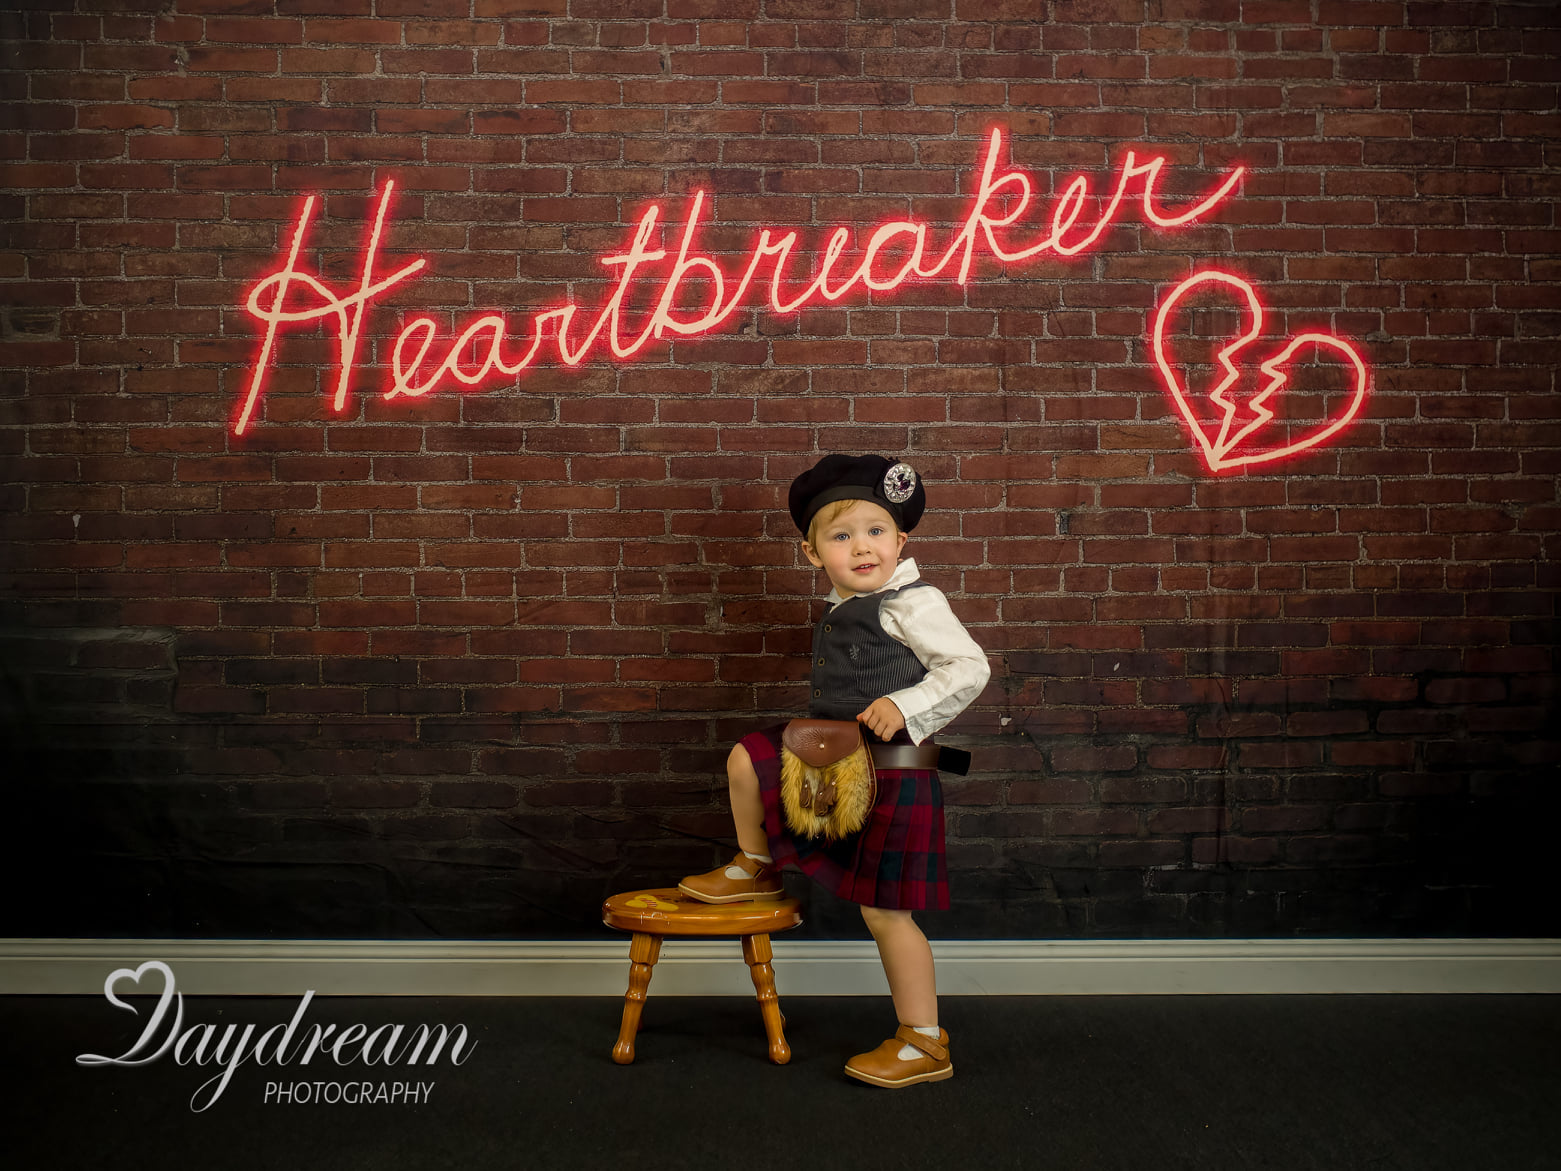 Kate Toile de fond de signe Heartbreaker conçue par Mandy Ringe Photographie